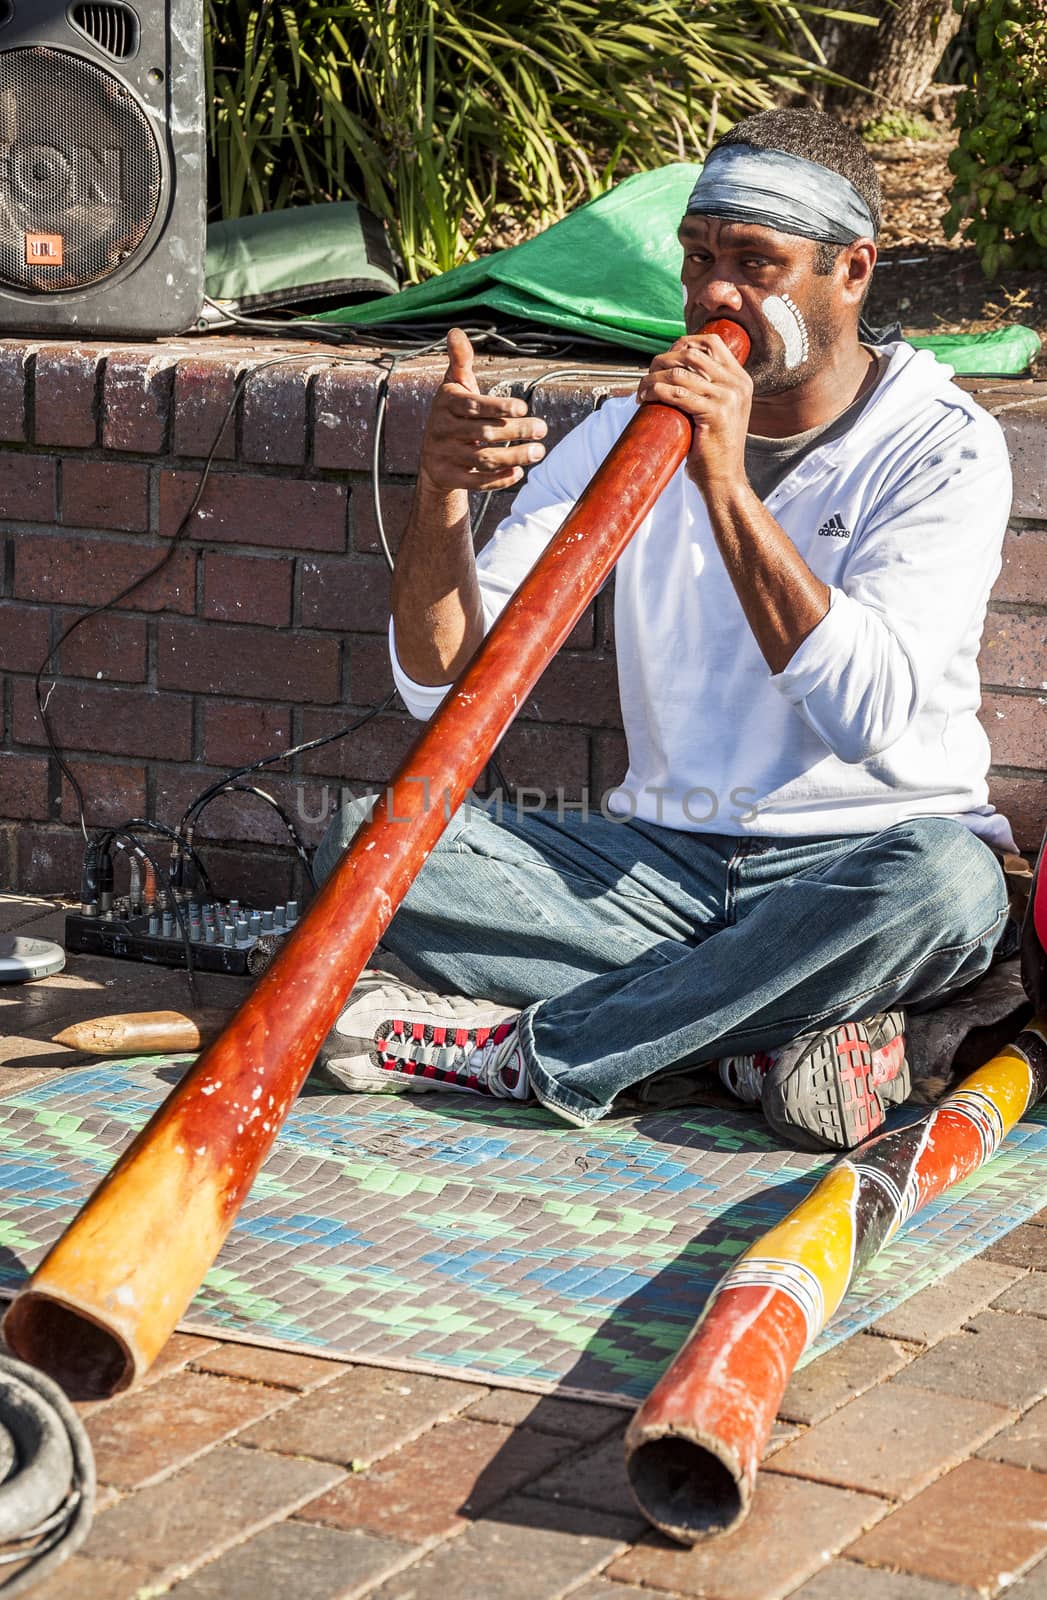 The Aborigene musician by edella